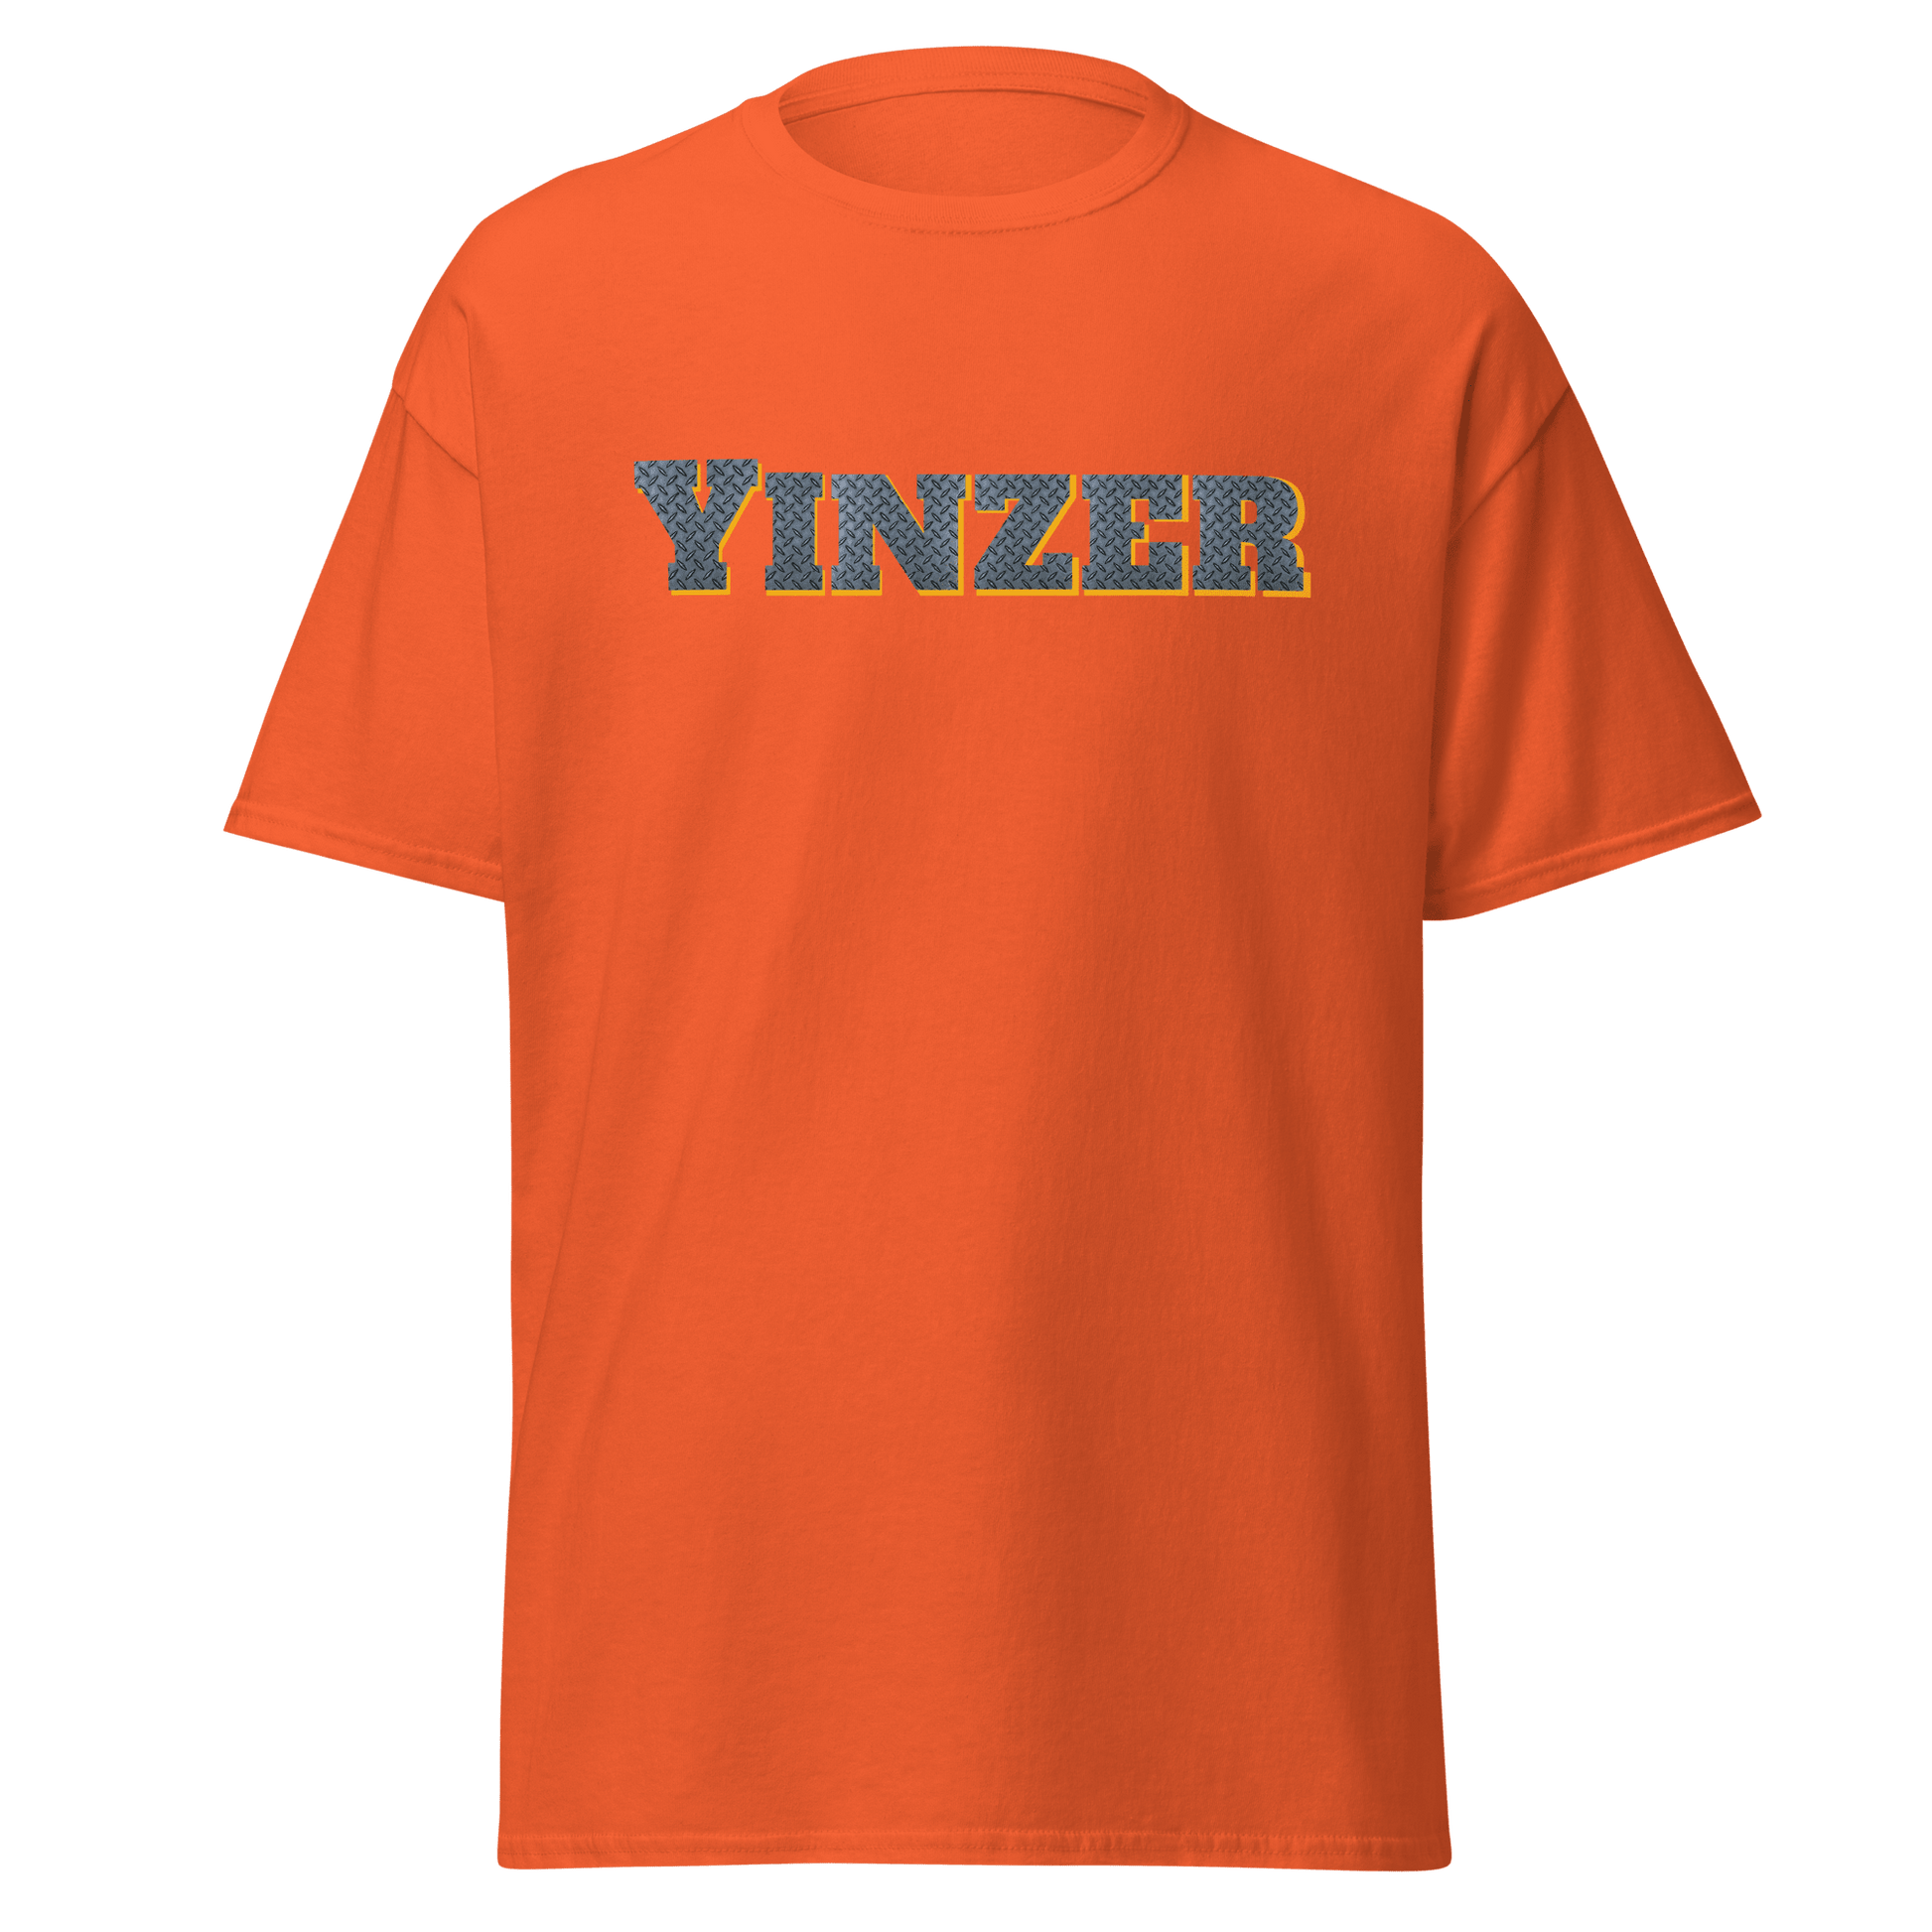 Steel Yinzer T-Shirt - Burgh Proud Yinzergear Orange S 